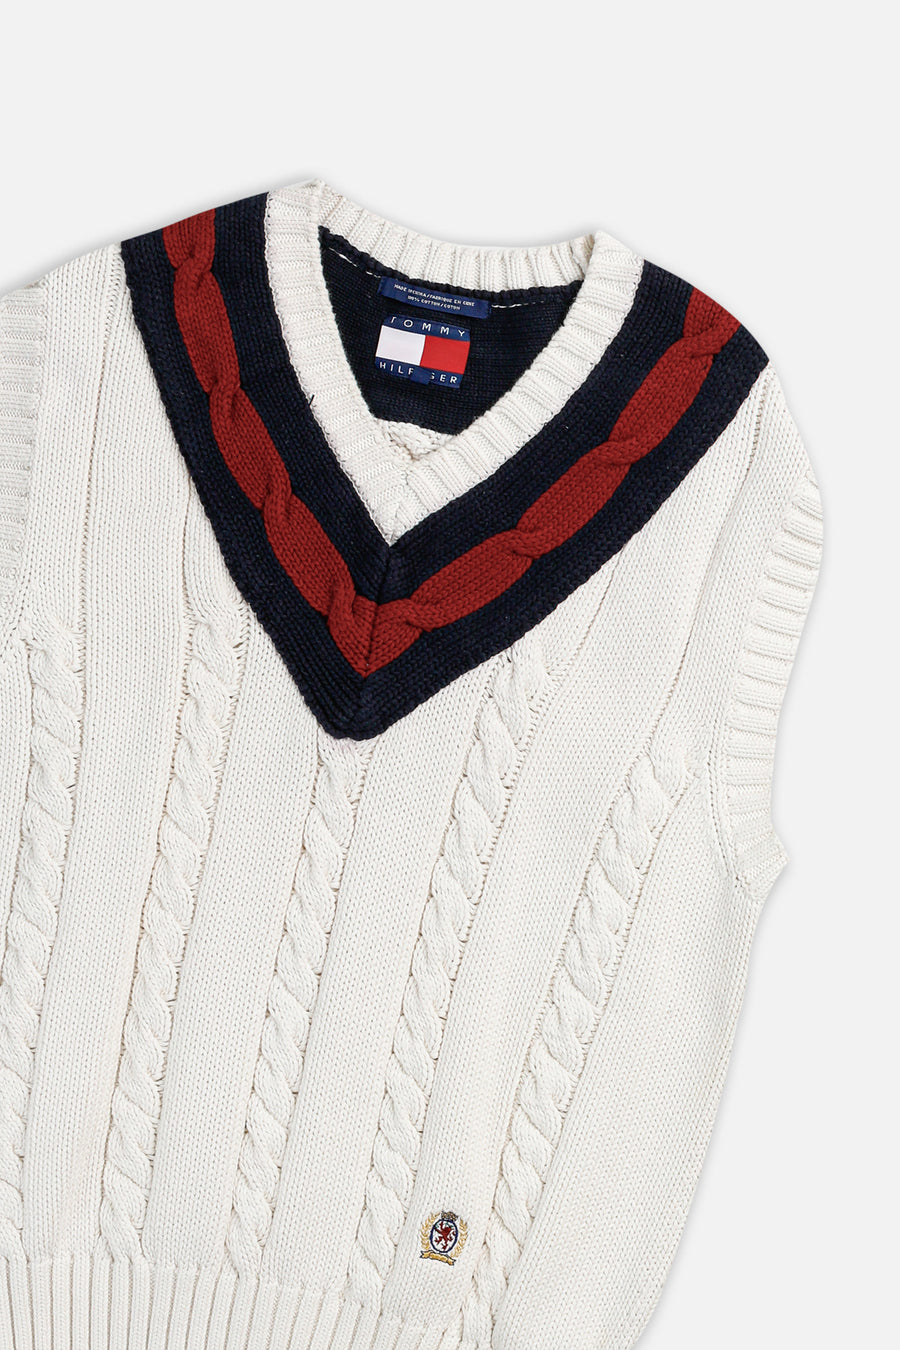 Vintage Tommy Knit Sweater Vest - L